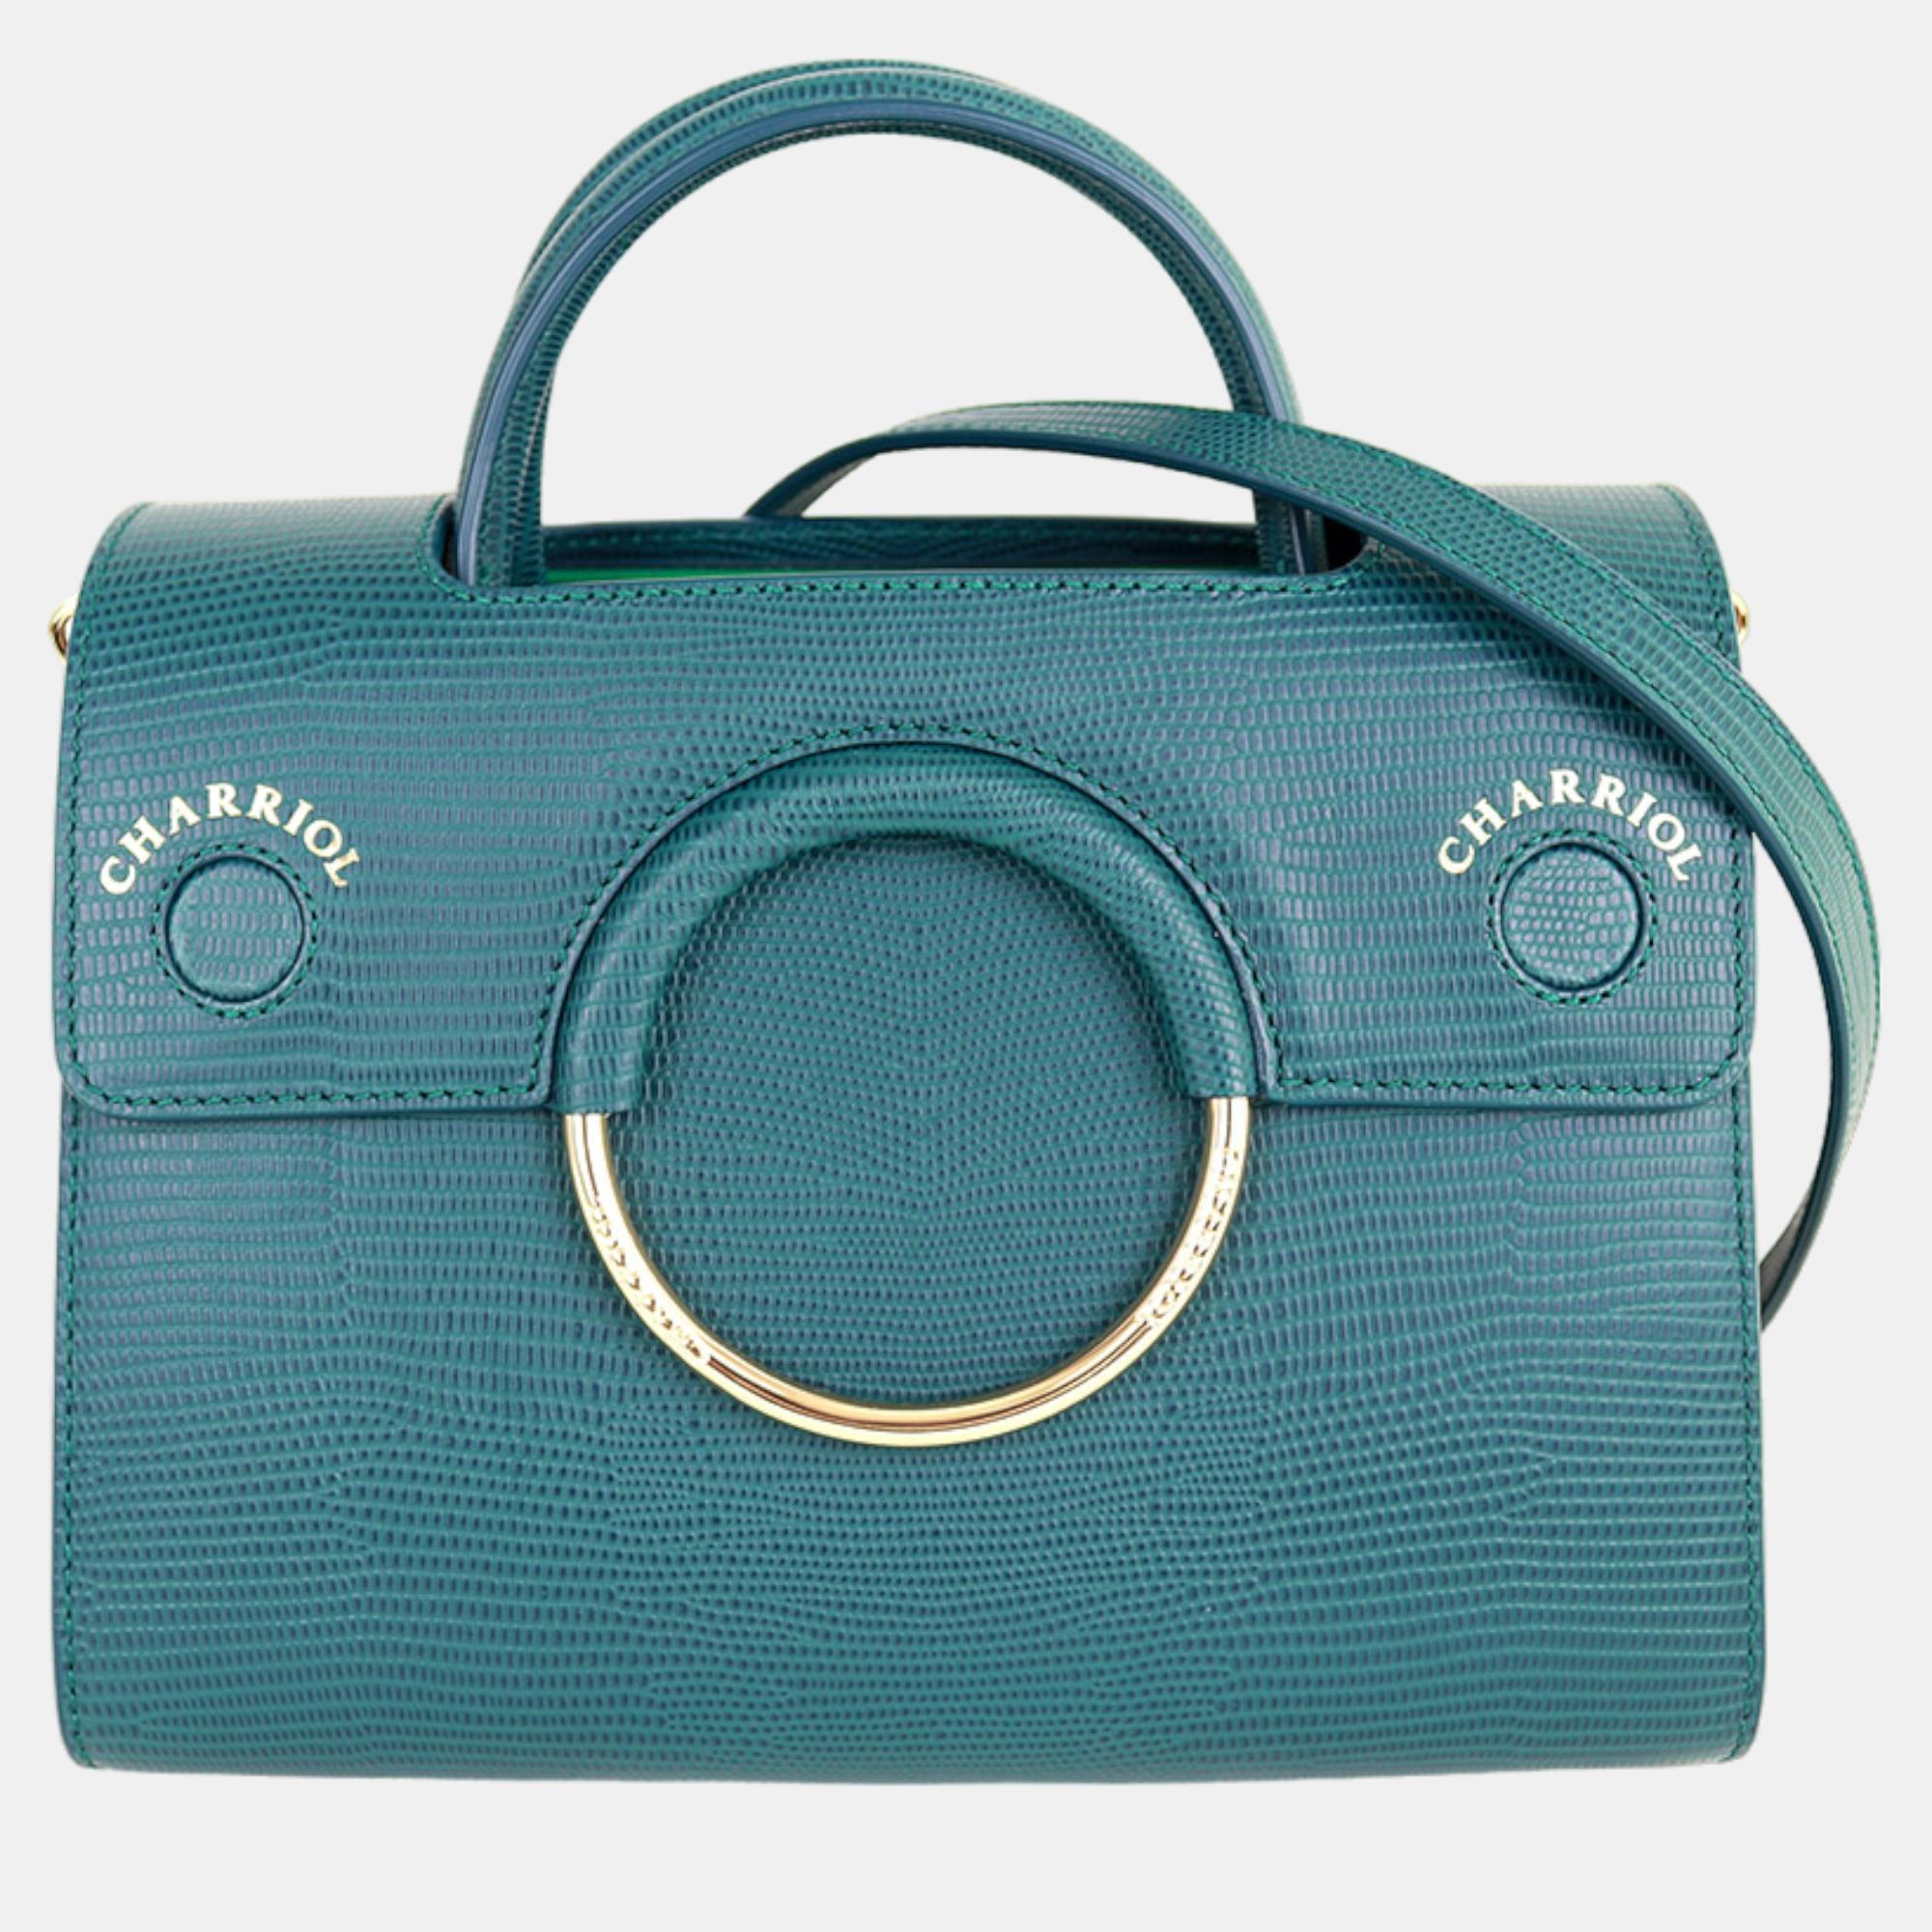 Charriol green leather chameleon handbag